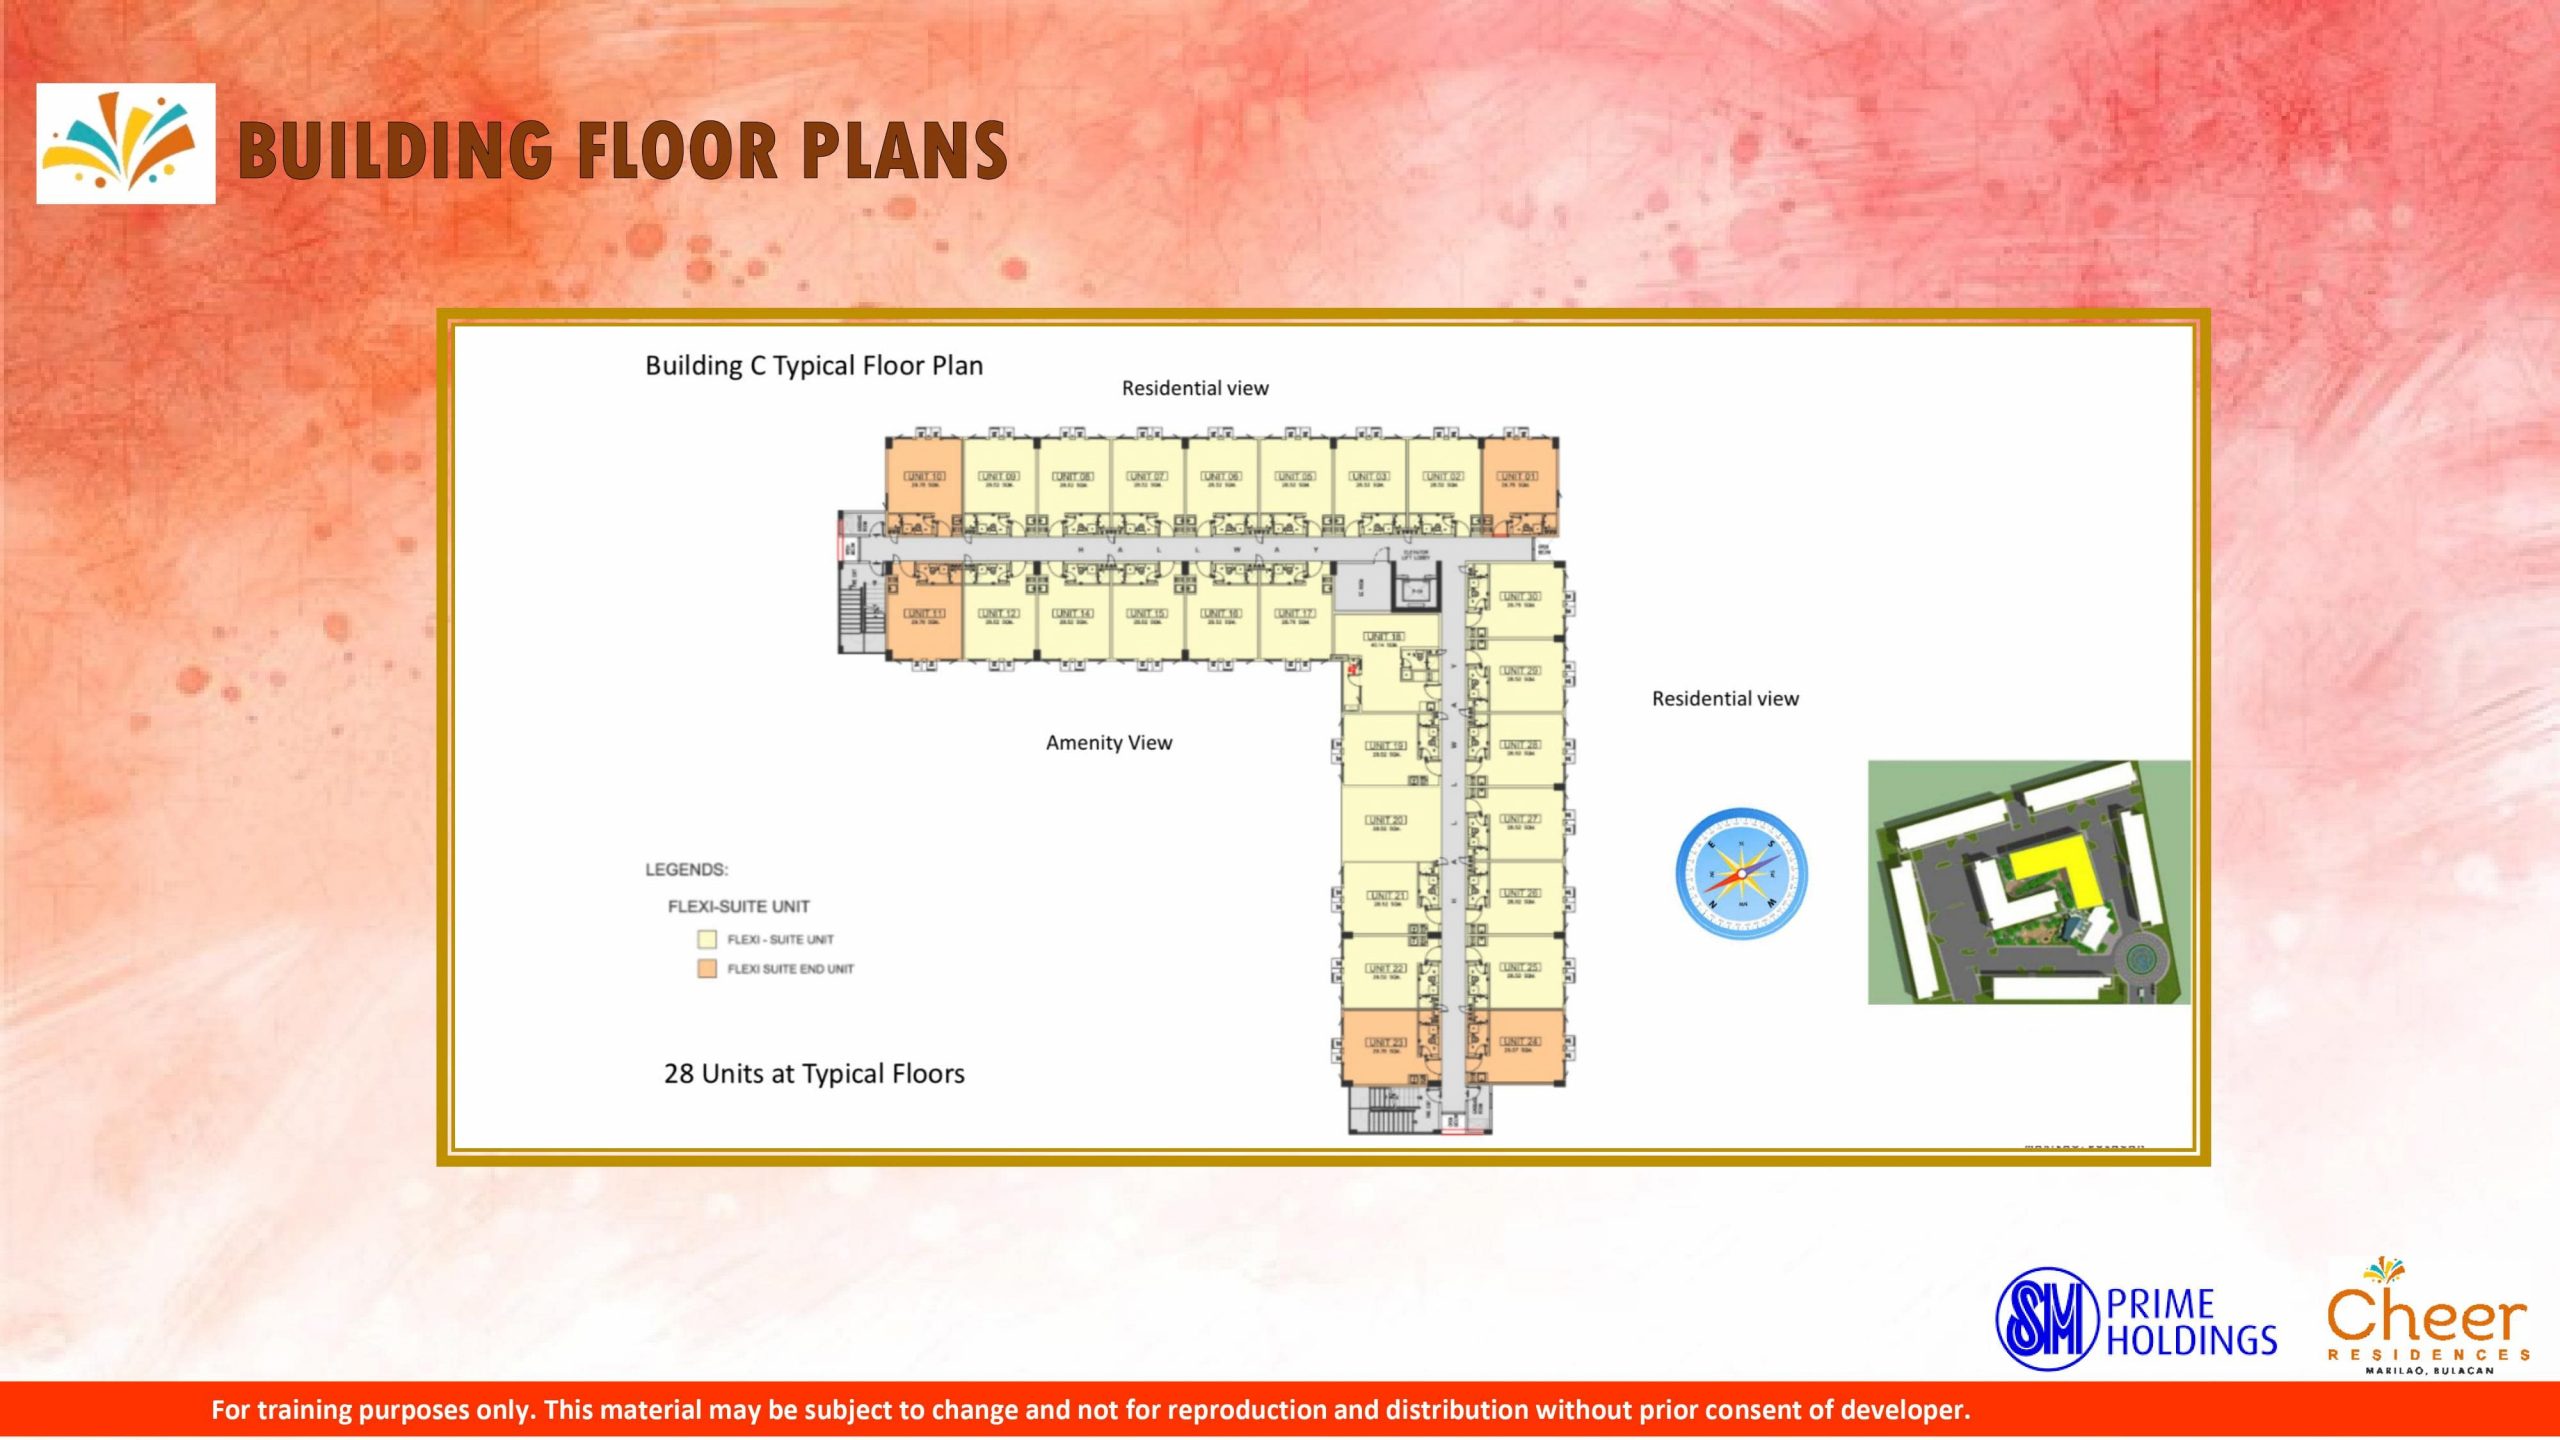 Building C Typical Floor Plan